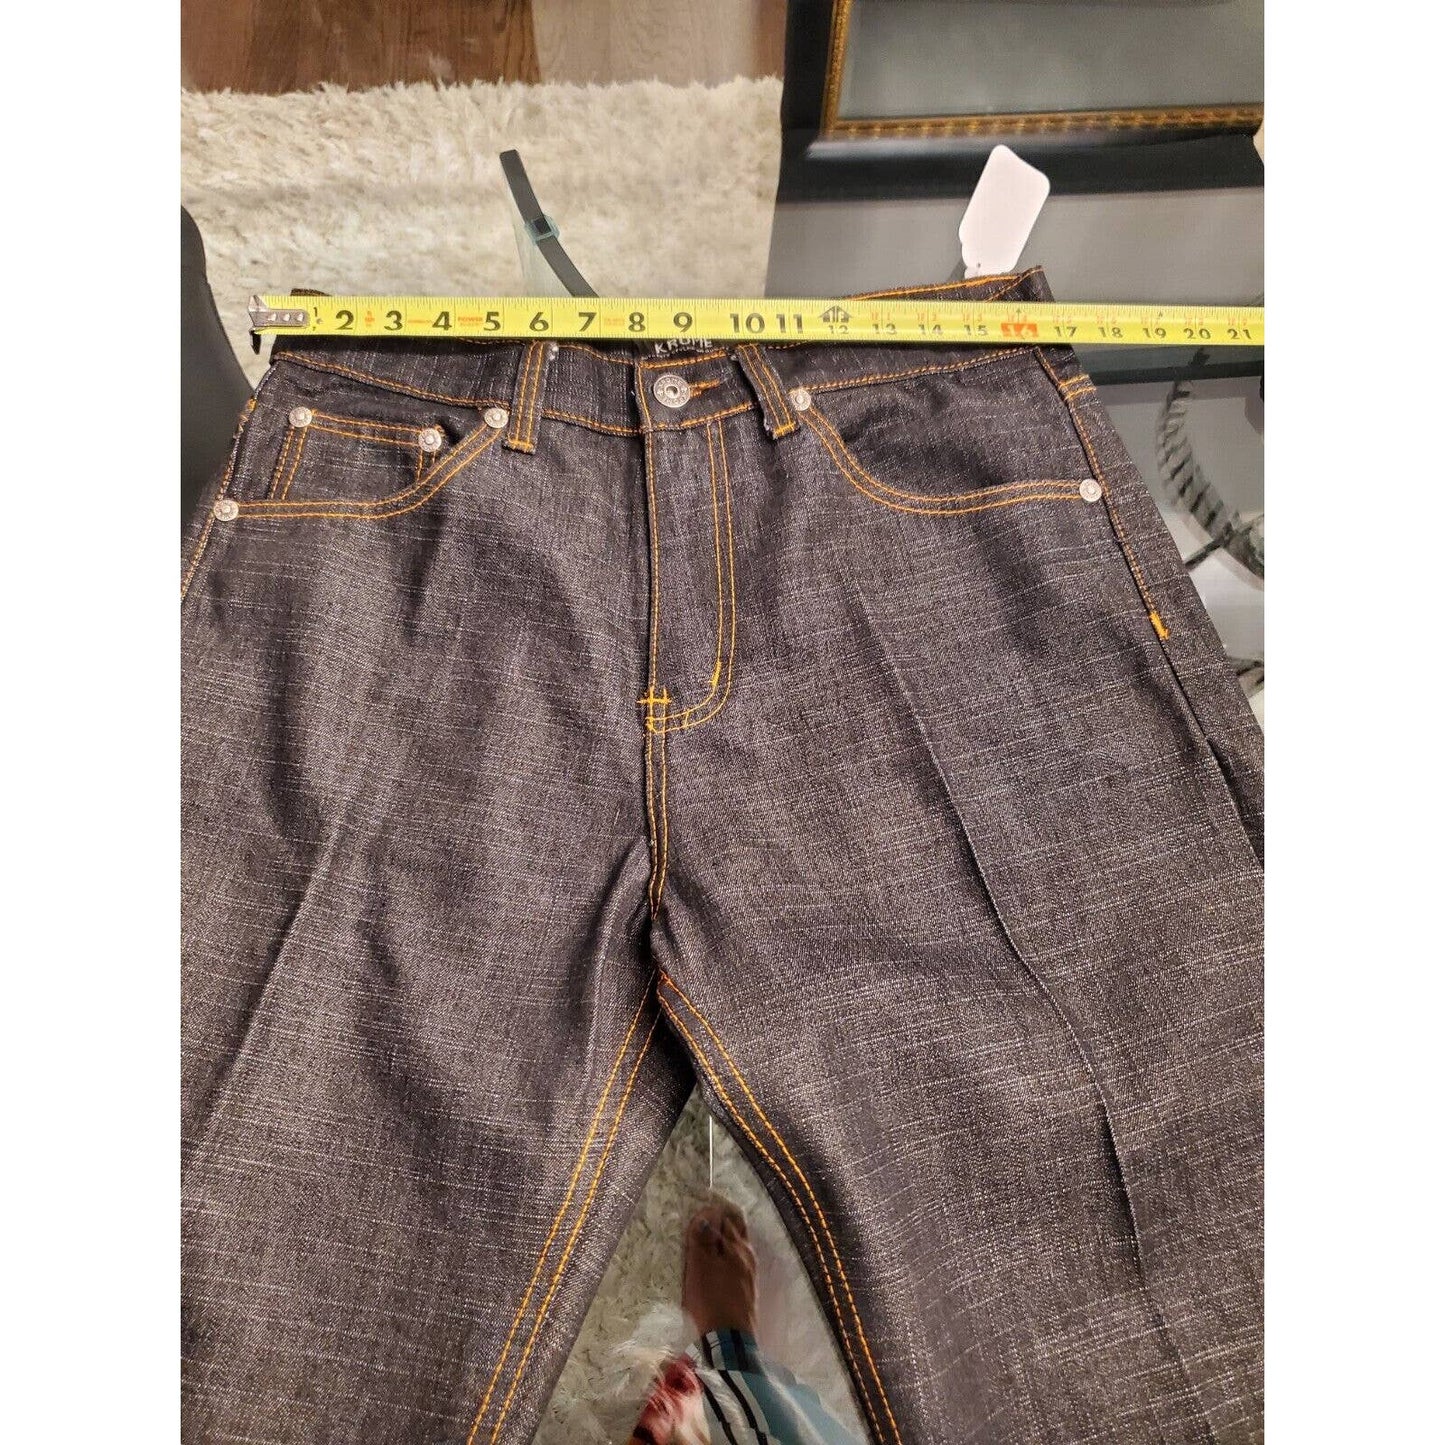 Krome Men Blue Denim Cotton High Rise Straight Fit Casual Jeans Pant Size 34/32